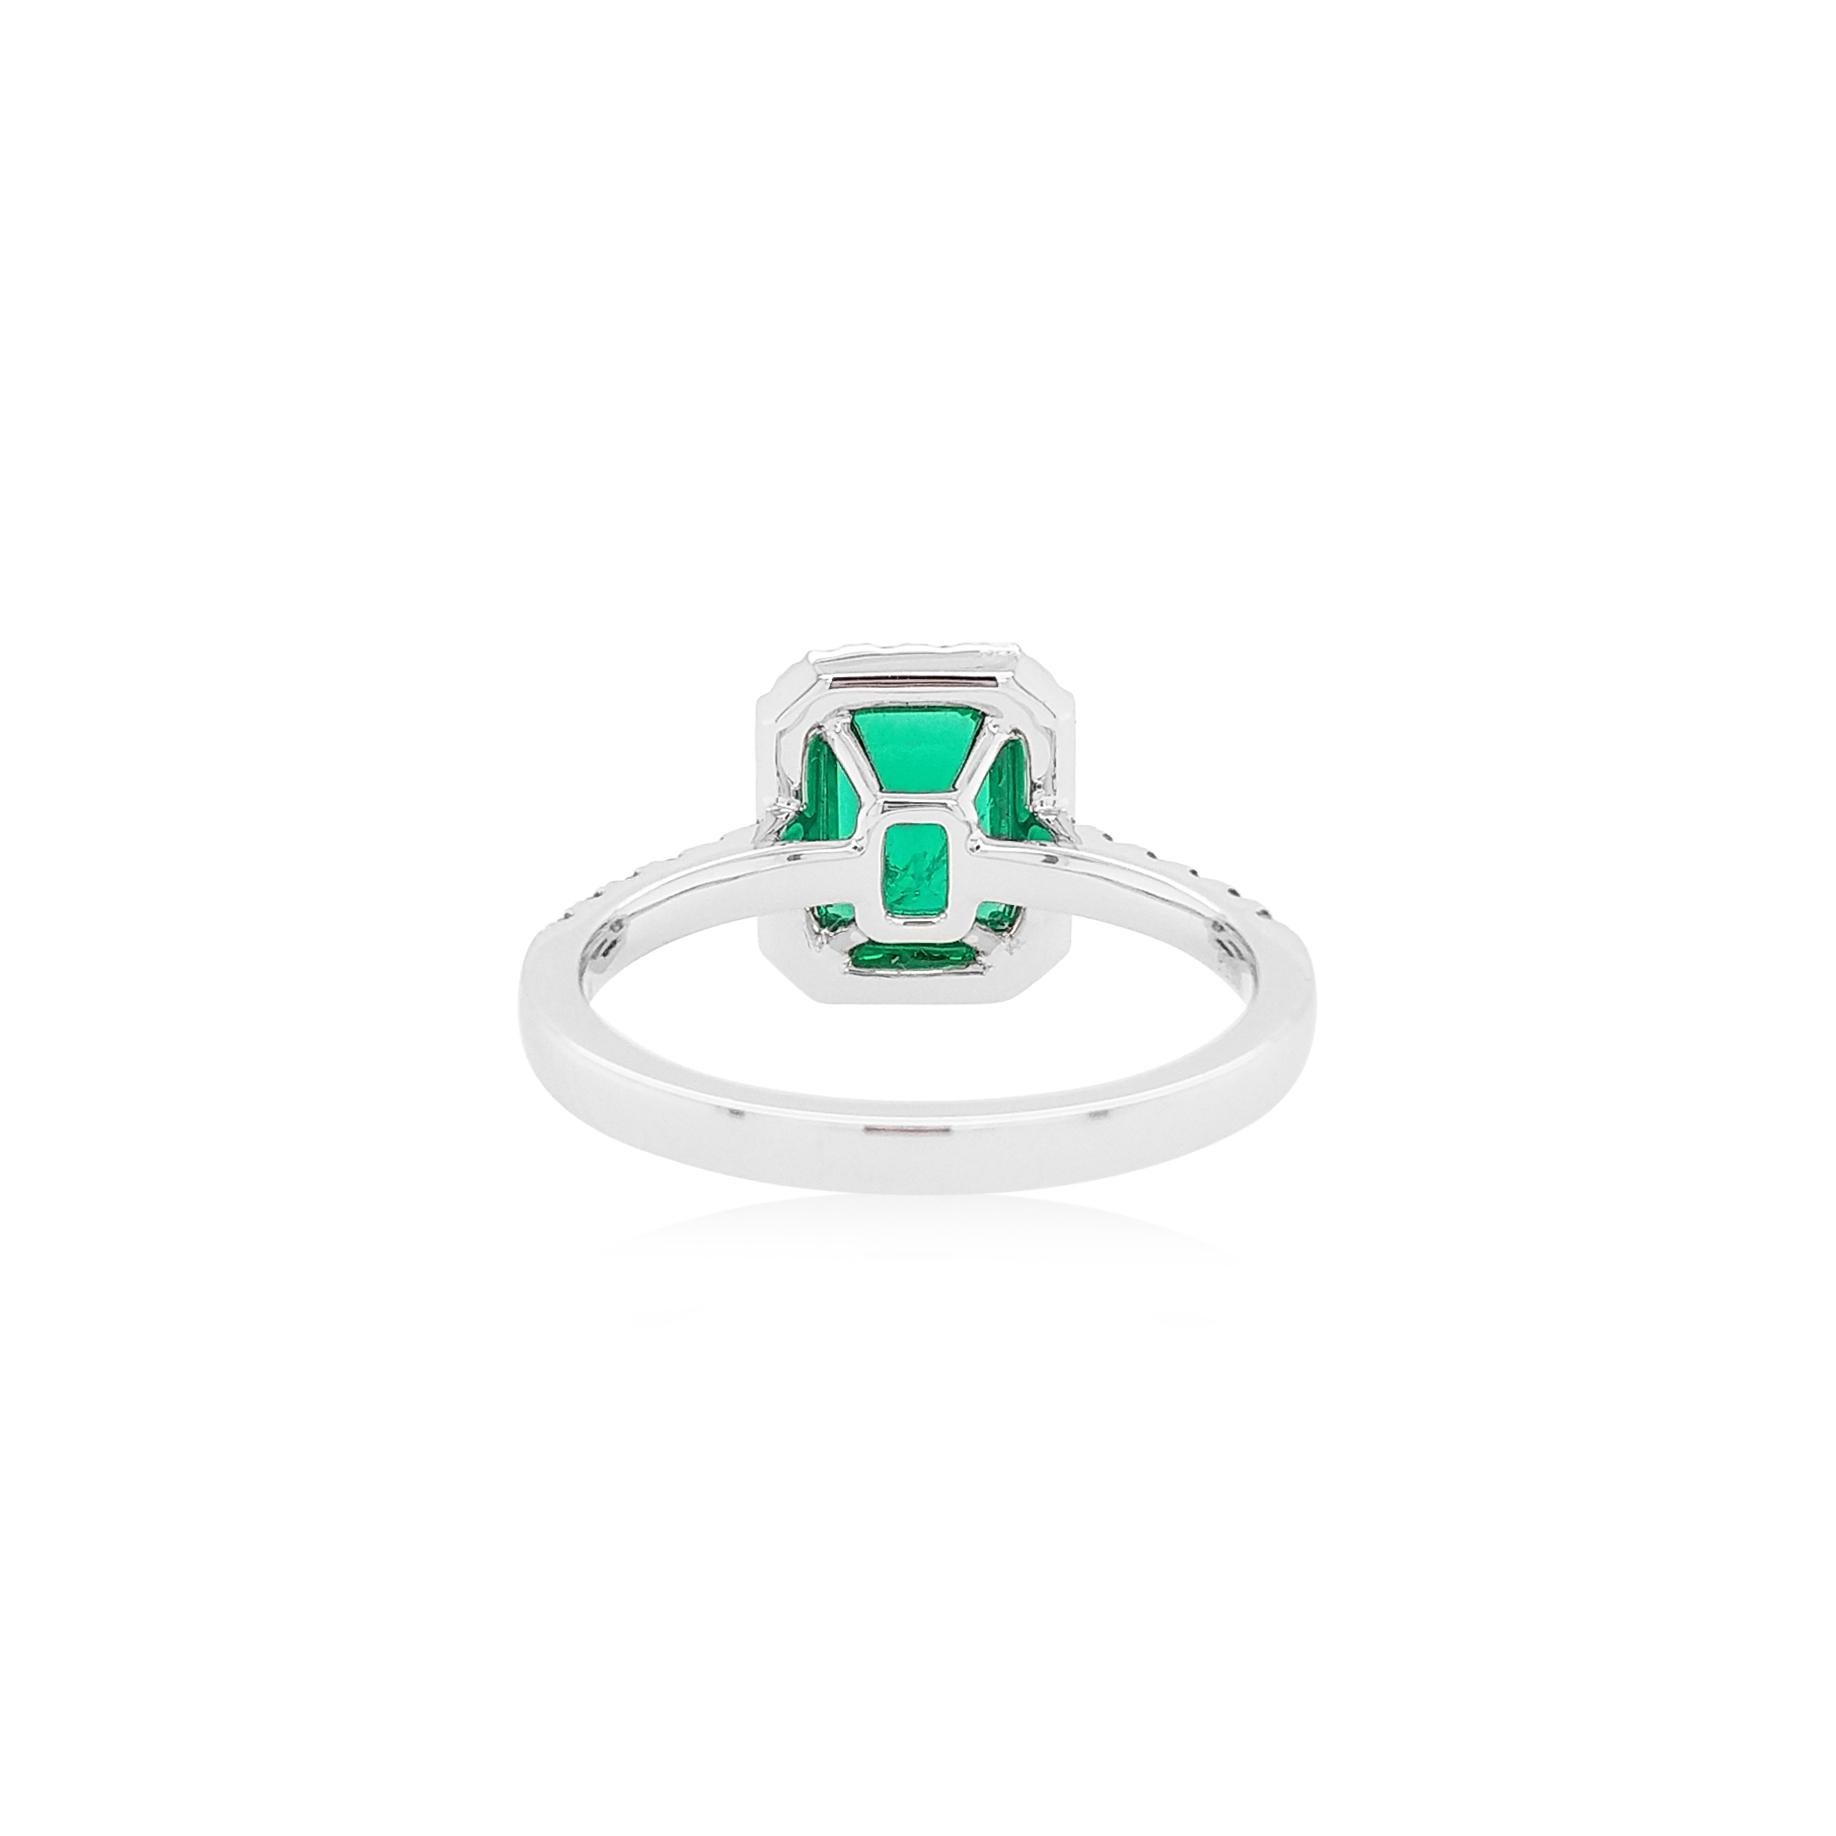 Dieser elegante Ring zeichnet sich durch einen lebhaften kolumbianischen Smaragd im Smaragdschliff aus, der von einem zarten weißen Diamanten umgeben ist. Dieser Ring ist in Platin gefasst, um die spektakulären Farben des Smaragds und das Funkeln